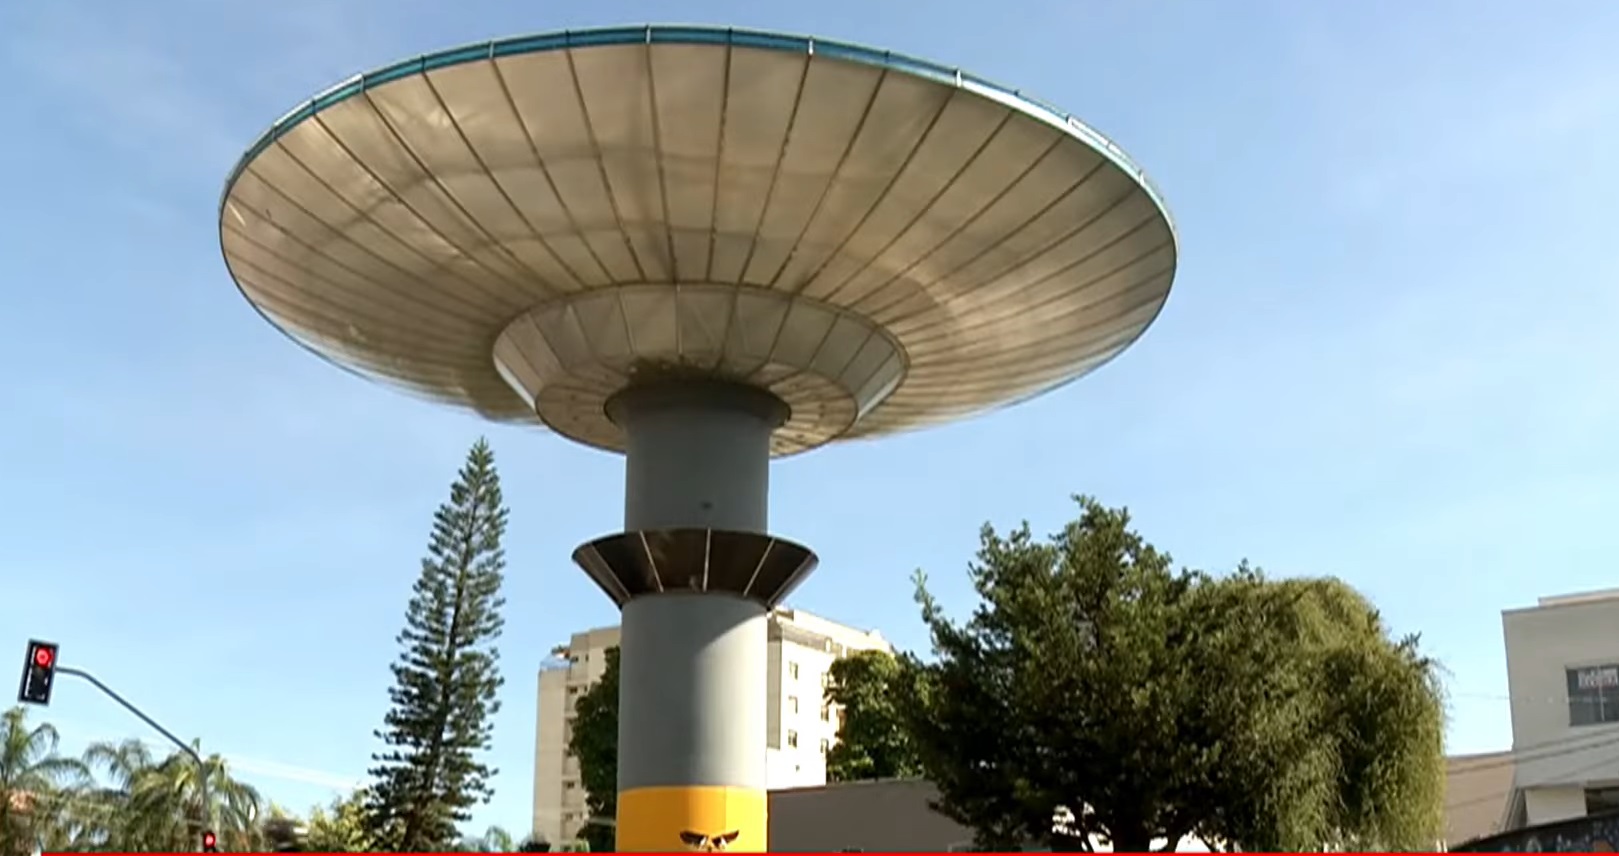 UFO-shaped water tank in Varginha